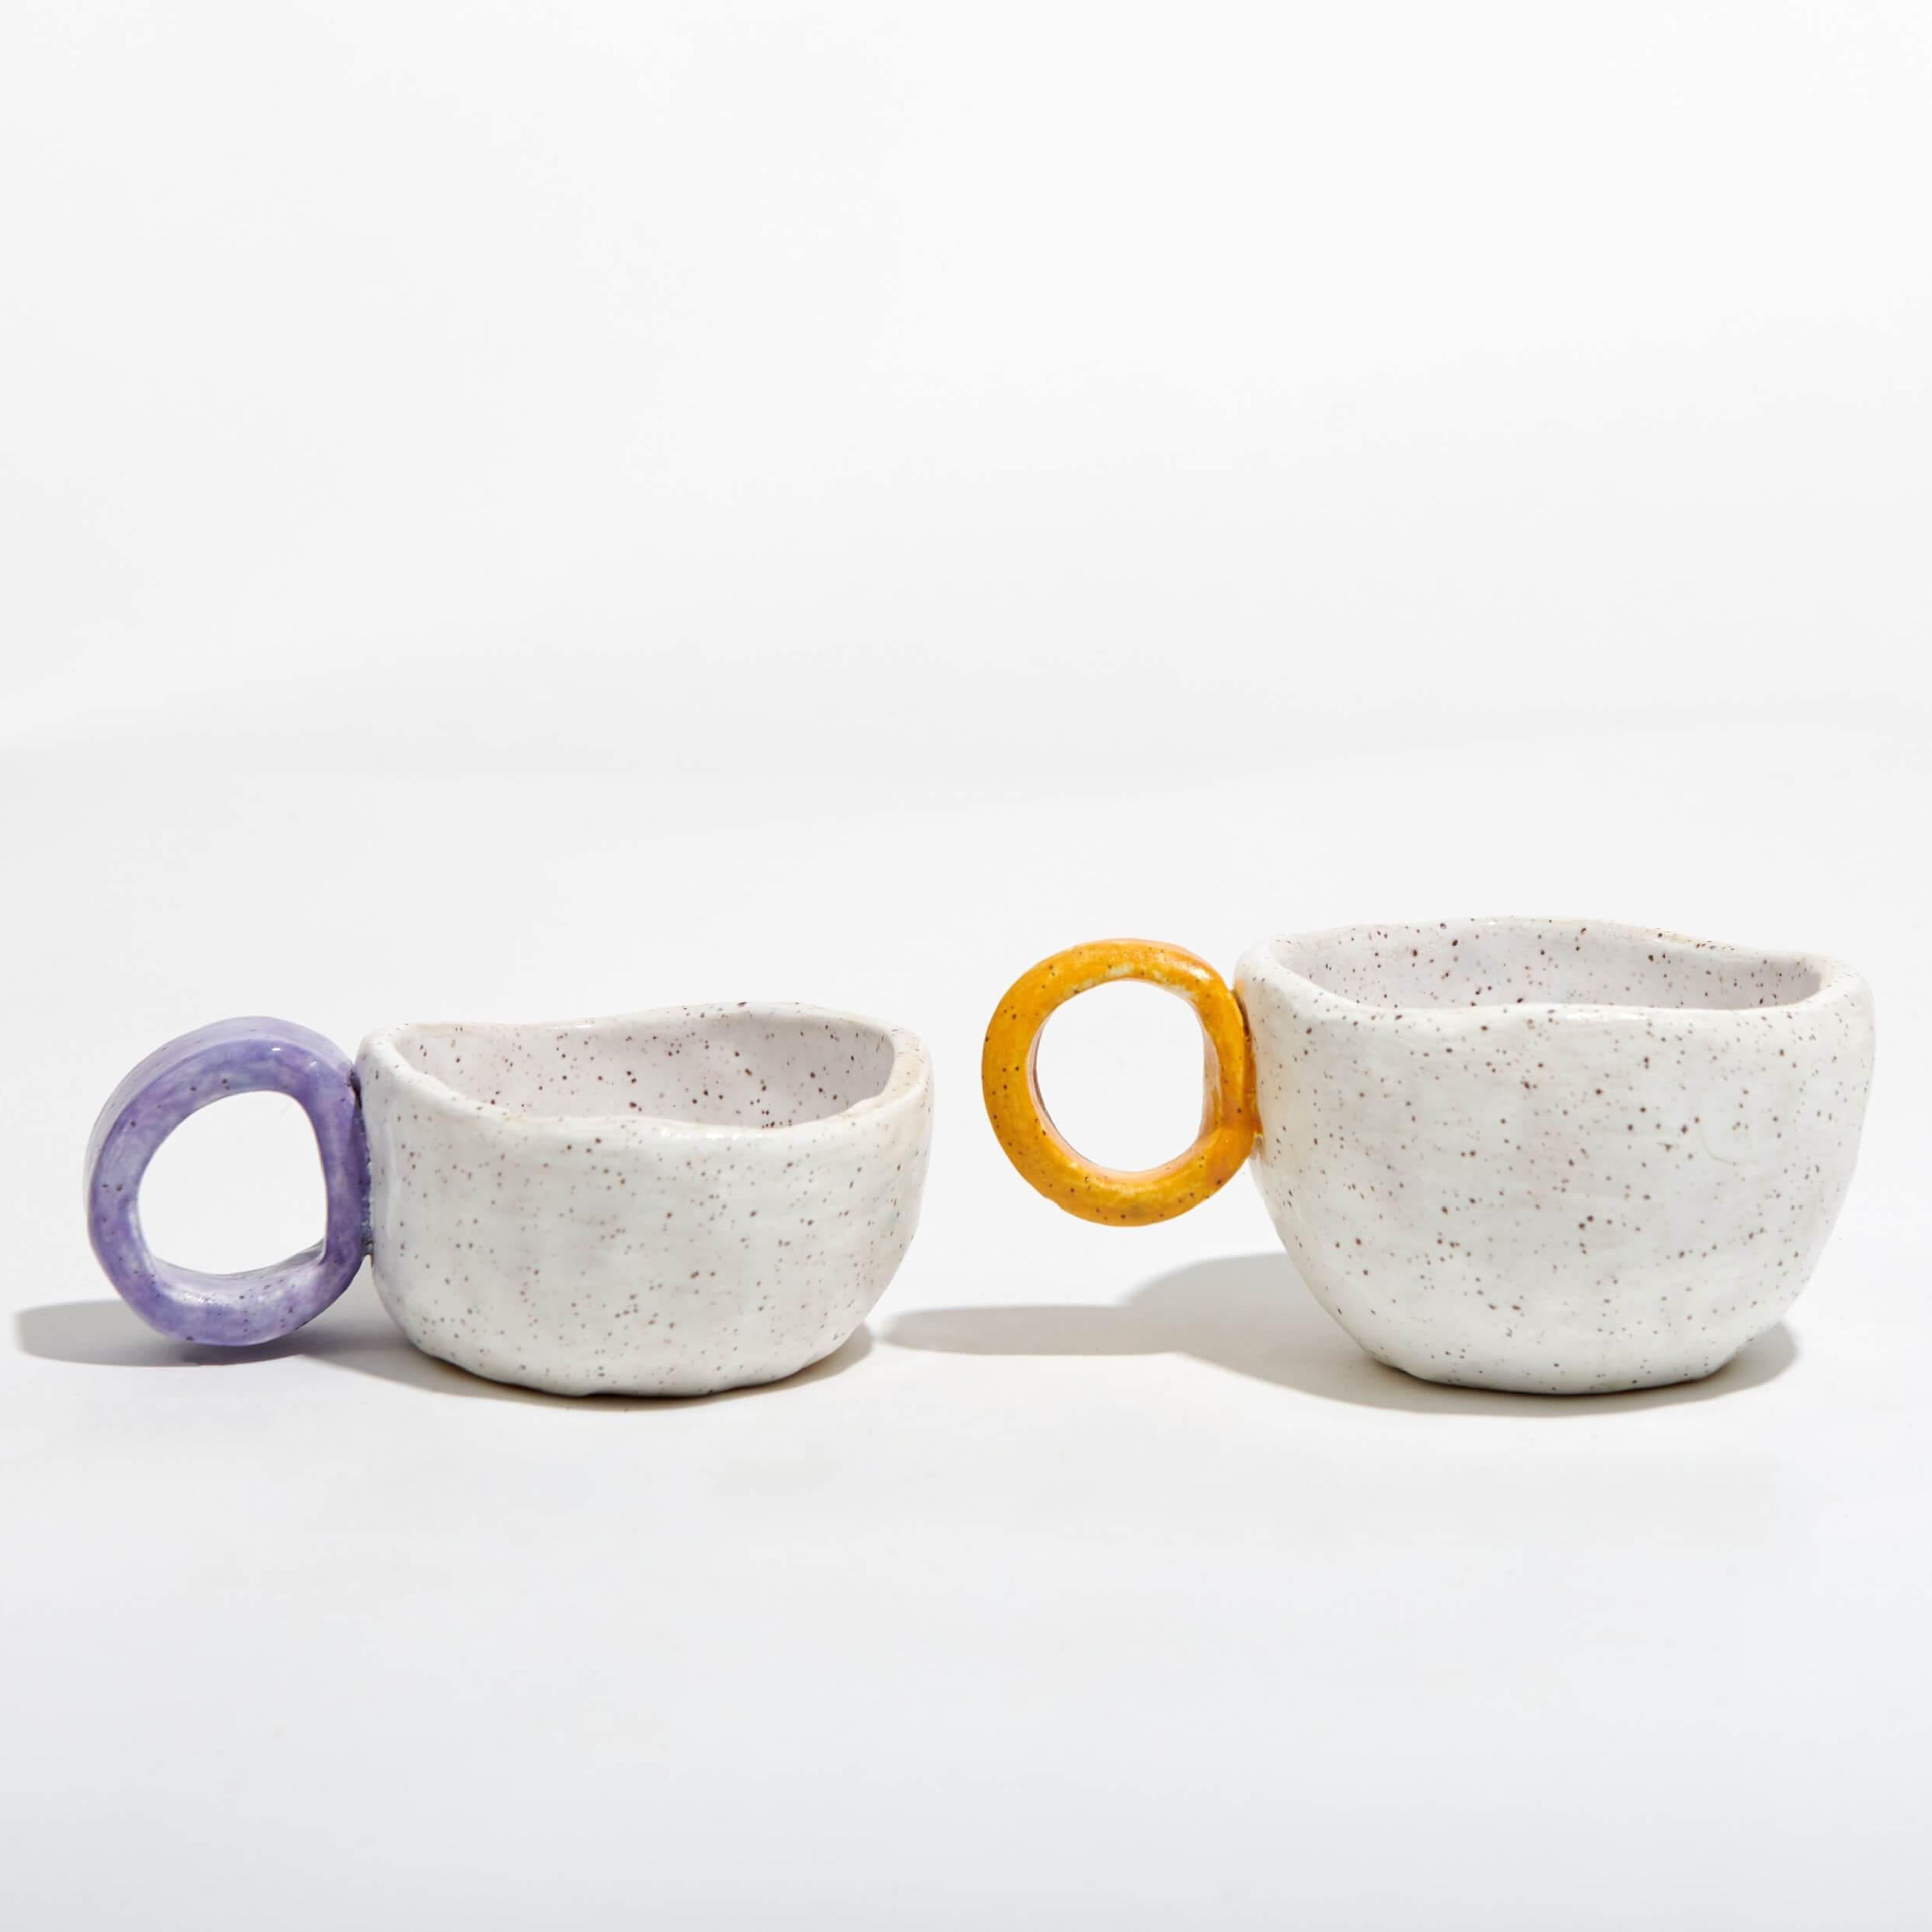 Beginner Pottery Kit – Ceramic